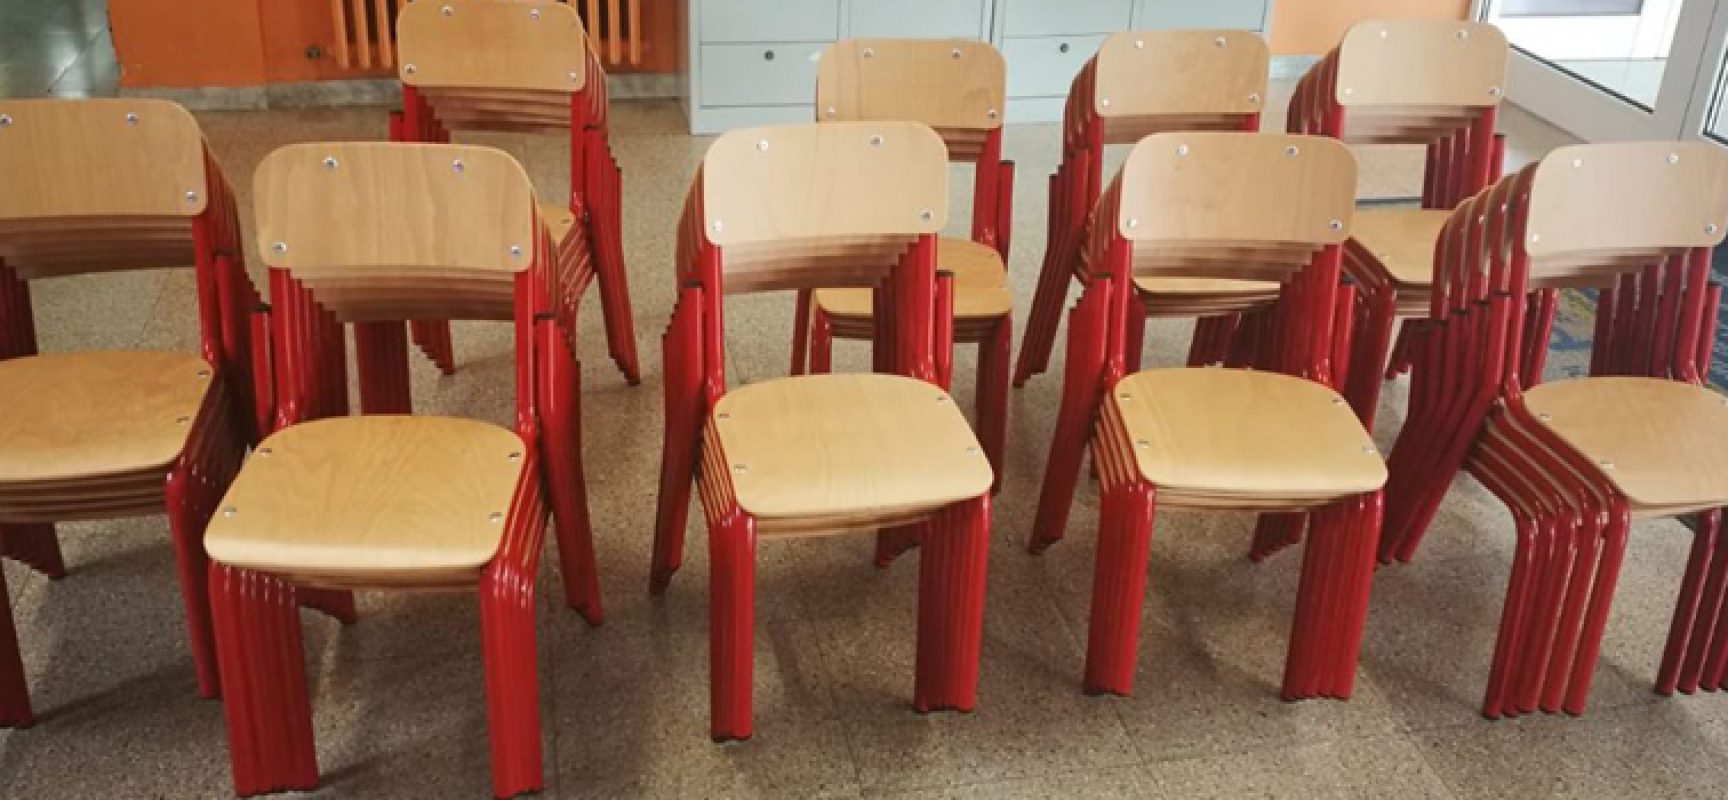 Scuola: consegnati banchi, sedie e attrezzature alle scuole elementari e medie